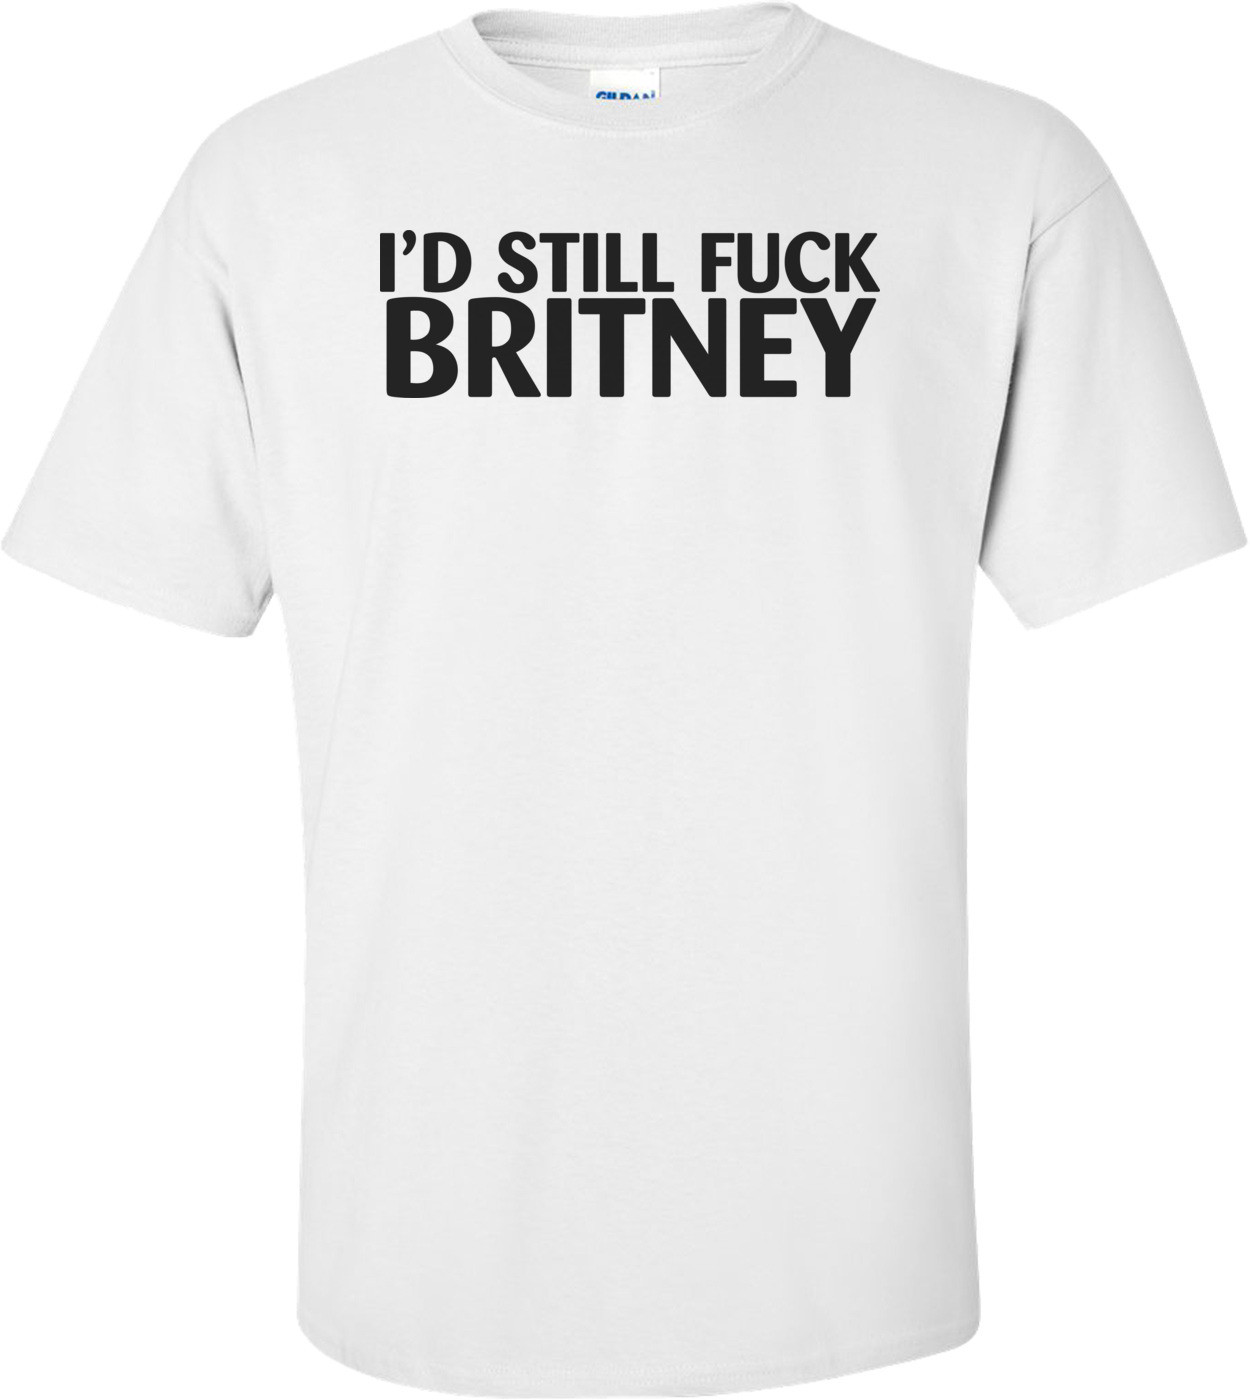 I'd Still Fuck Britney T-shirt